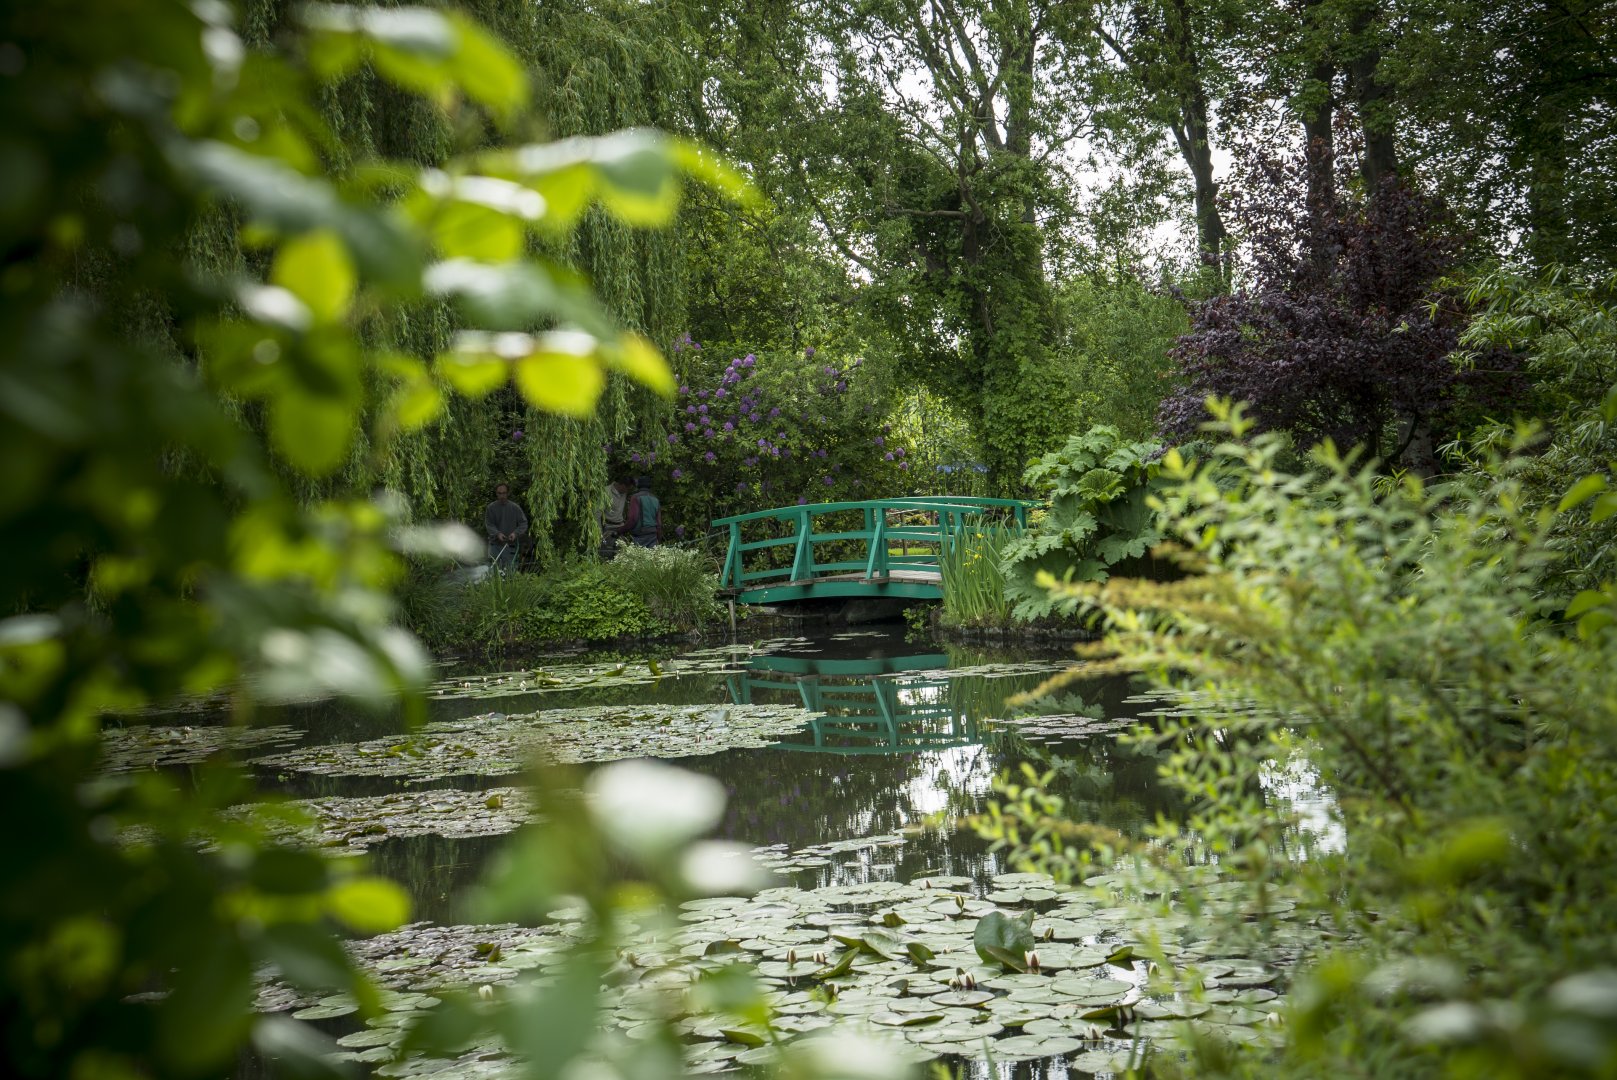 A modern kert festői: Monet-tól Matisse-ig - forrás: Pannonia Entertainment